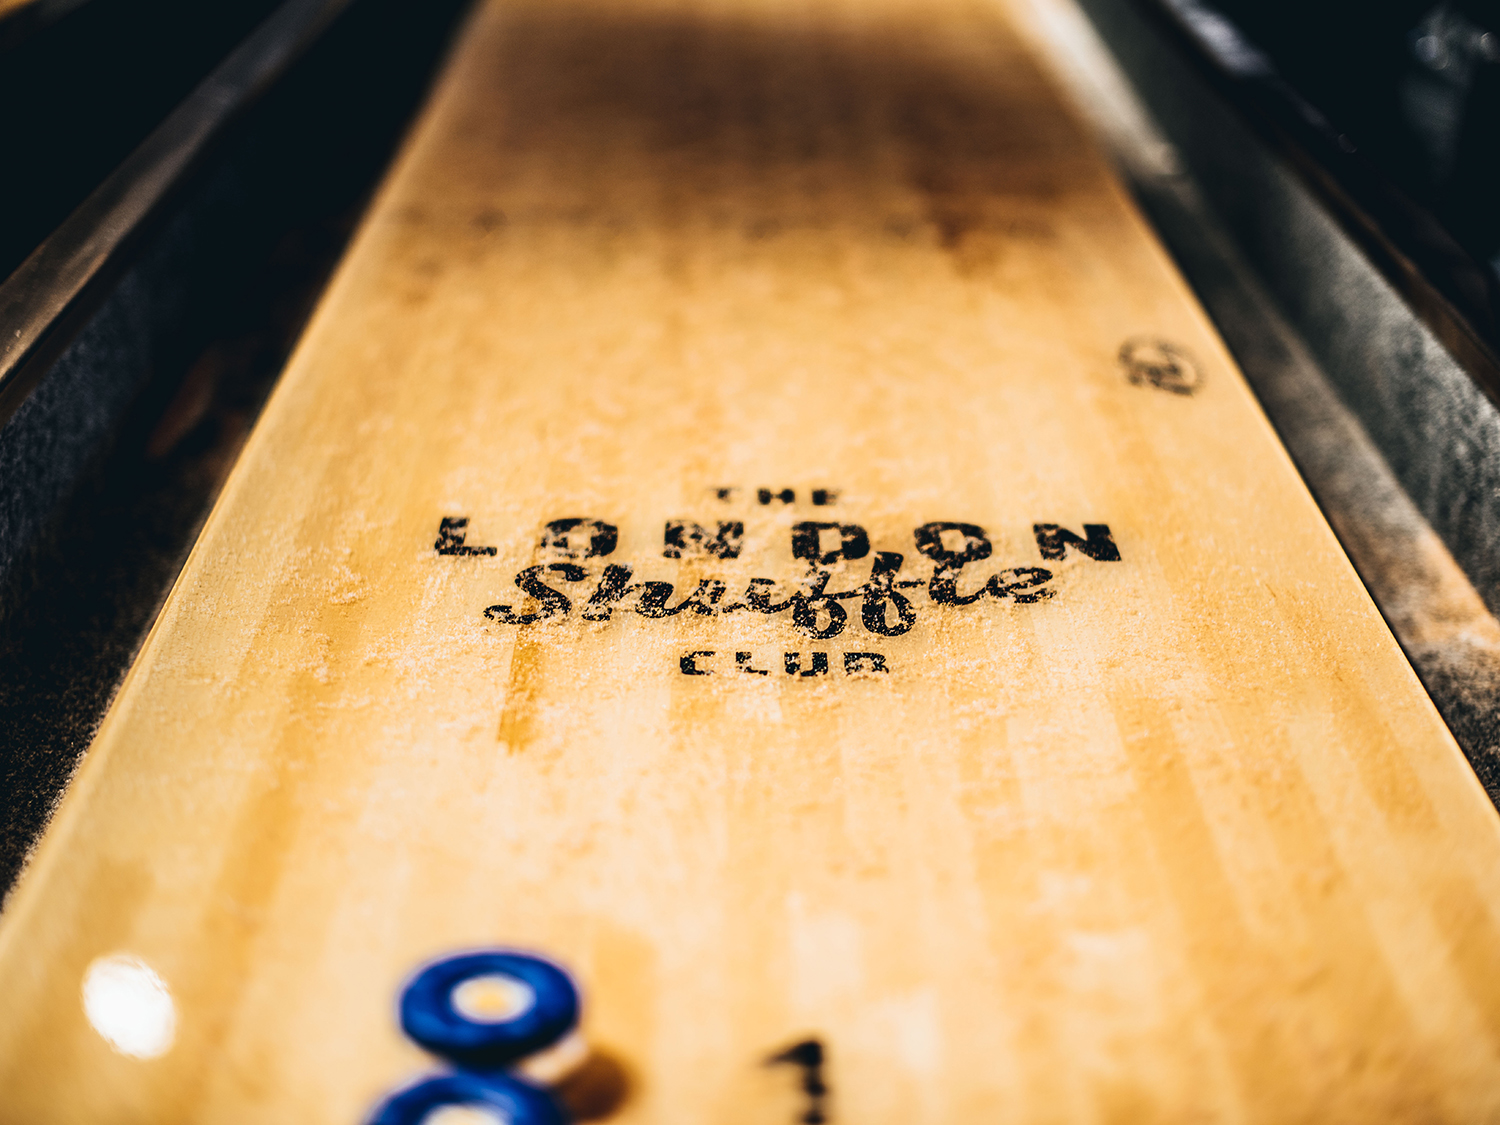 Shuffleboarding at The London Shuffle Club Things to do in London hq pic